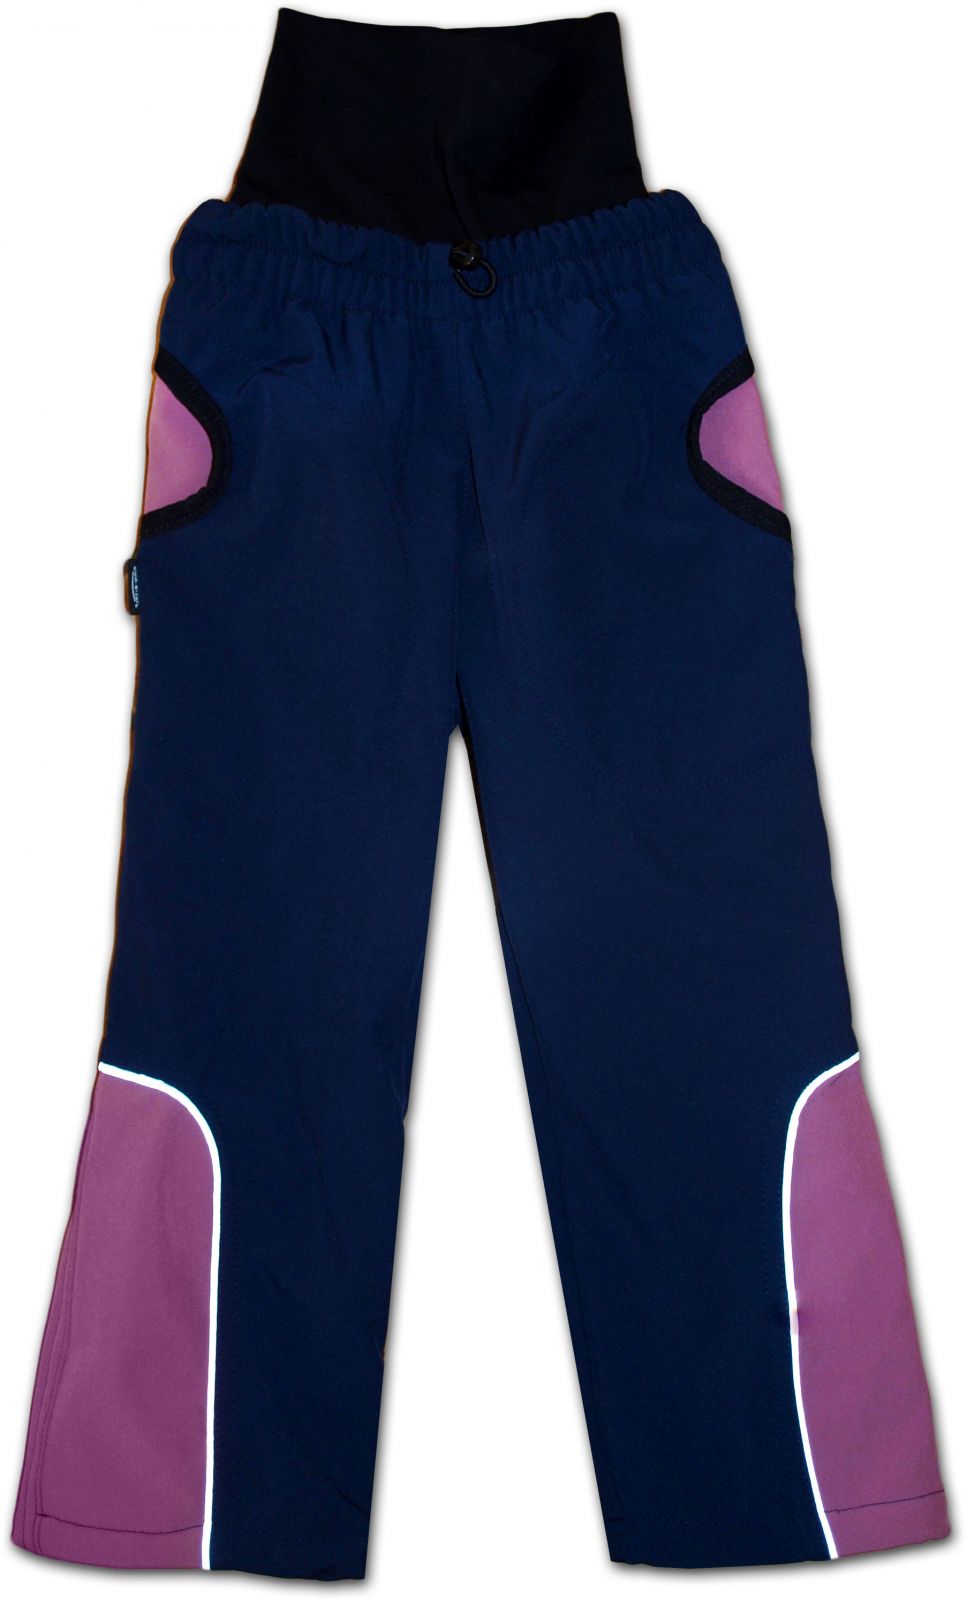 Softshellhose für Kinder, mit einem Bund in der Taille, dunkelblau/rosa